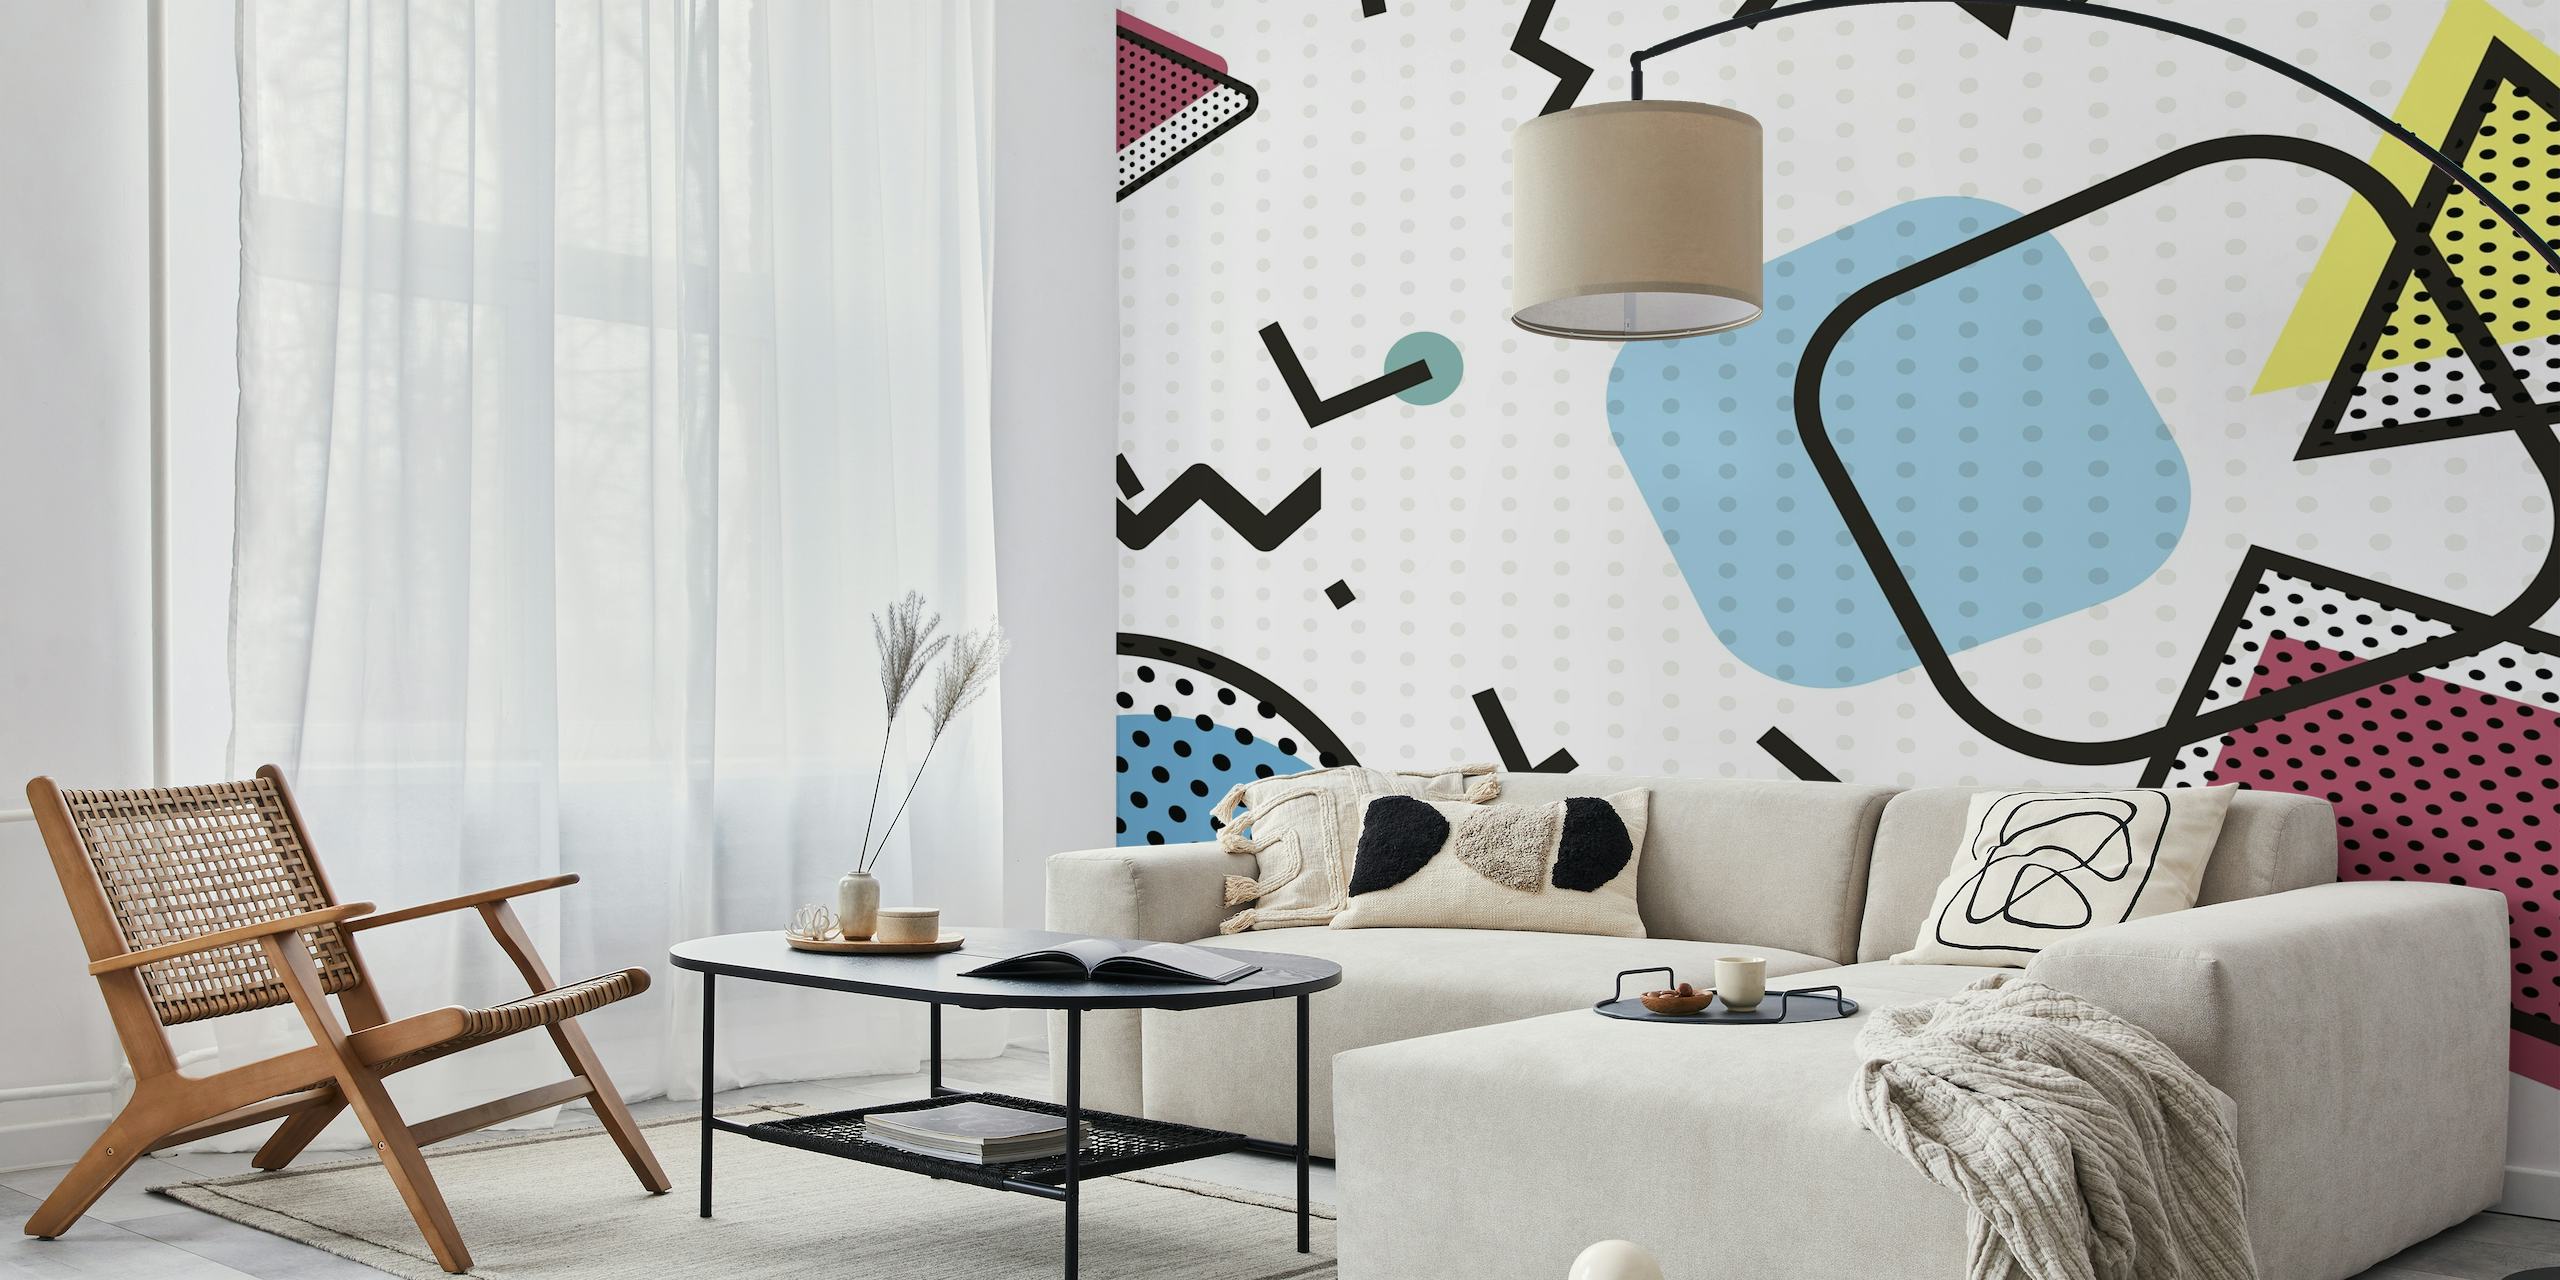 Formas geométricas abstractas en un mural de estilo pop-art con colores llamativos y diseños vintage.